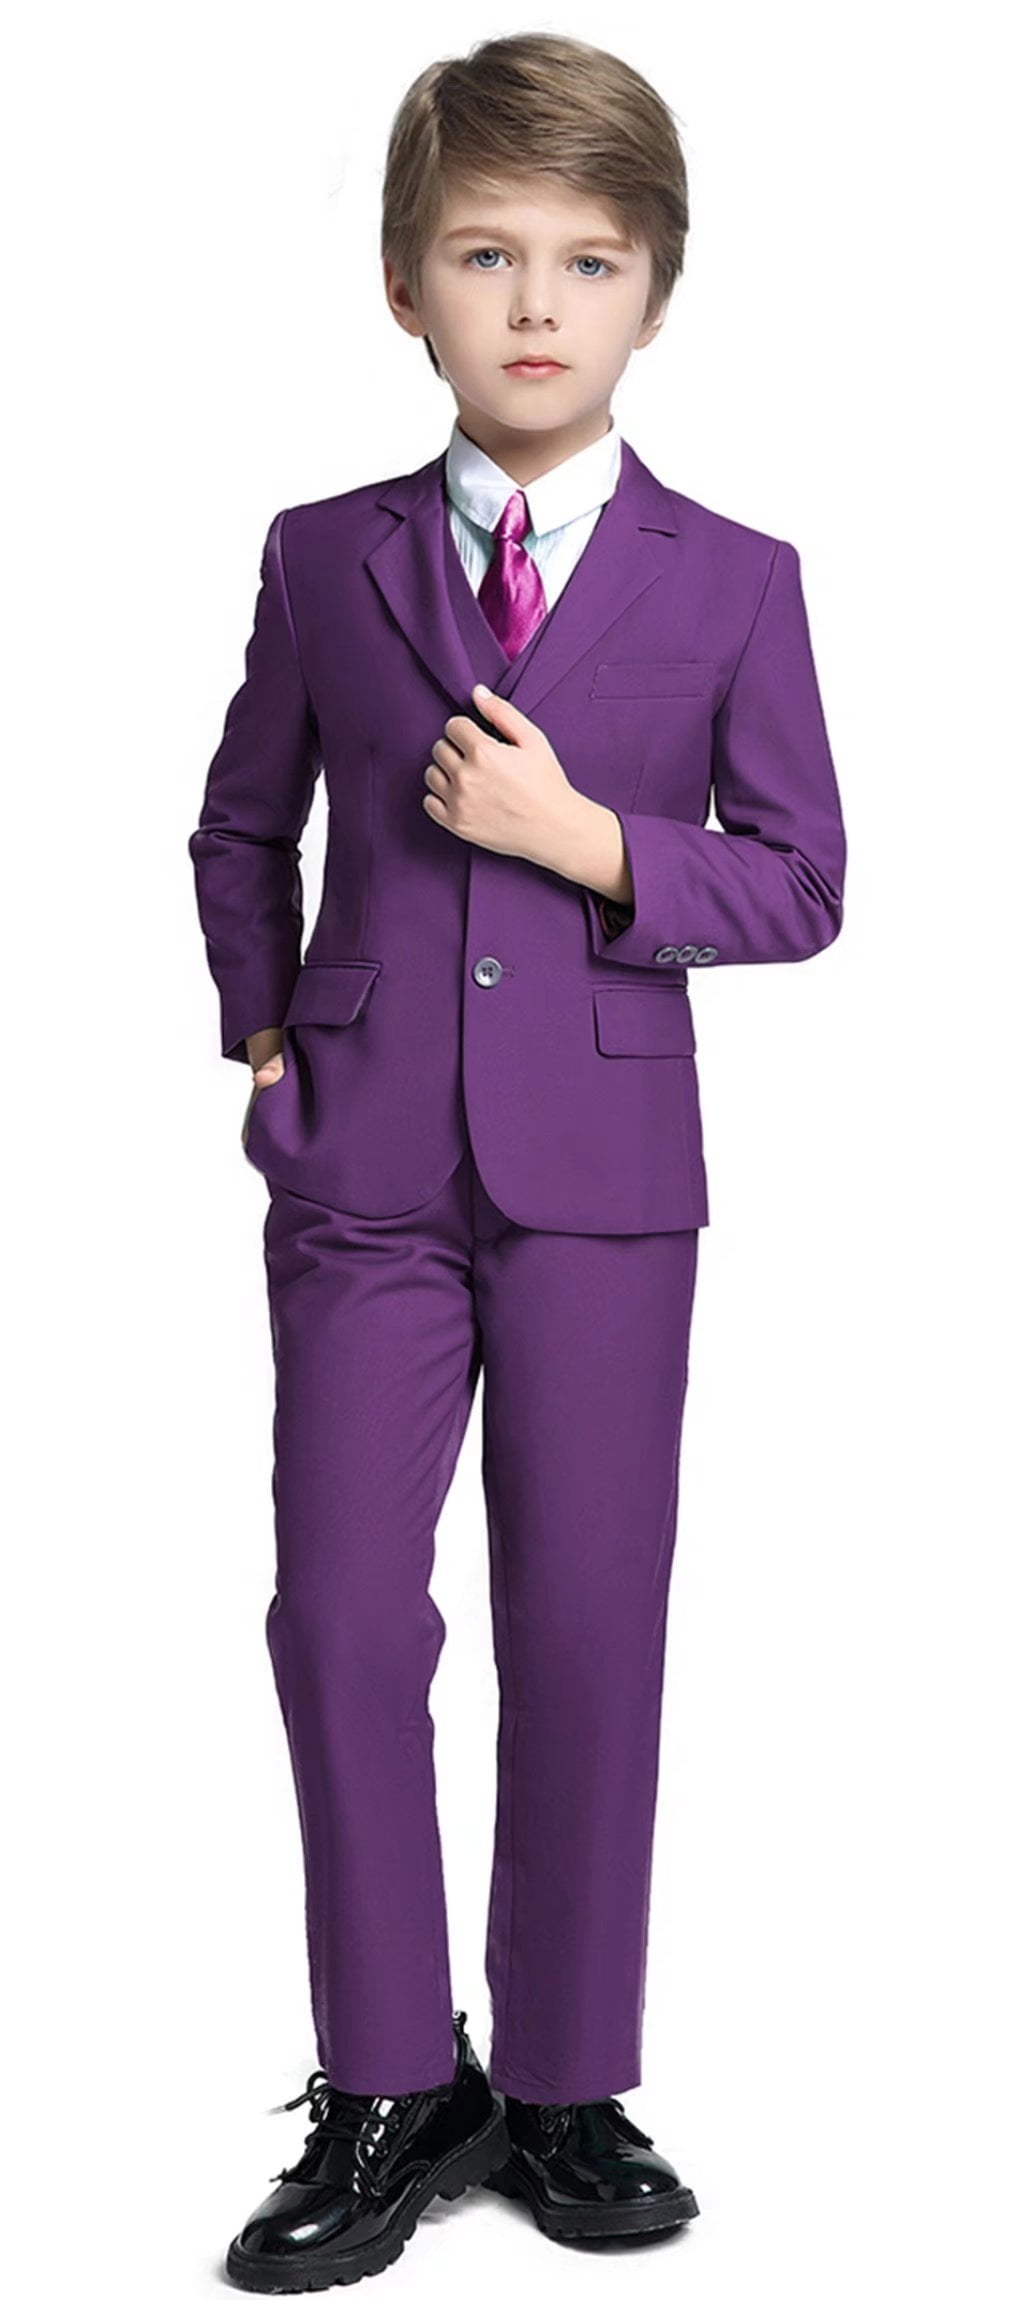 Boys Suits Boy's Slim Fit Suit Dress Clothes Easter Outfit Formal Suit Set Purple for Boys Size 12 - Walmart.com